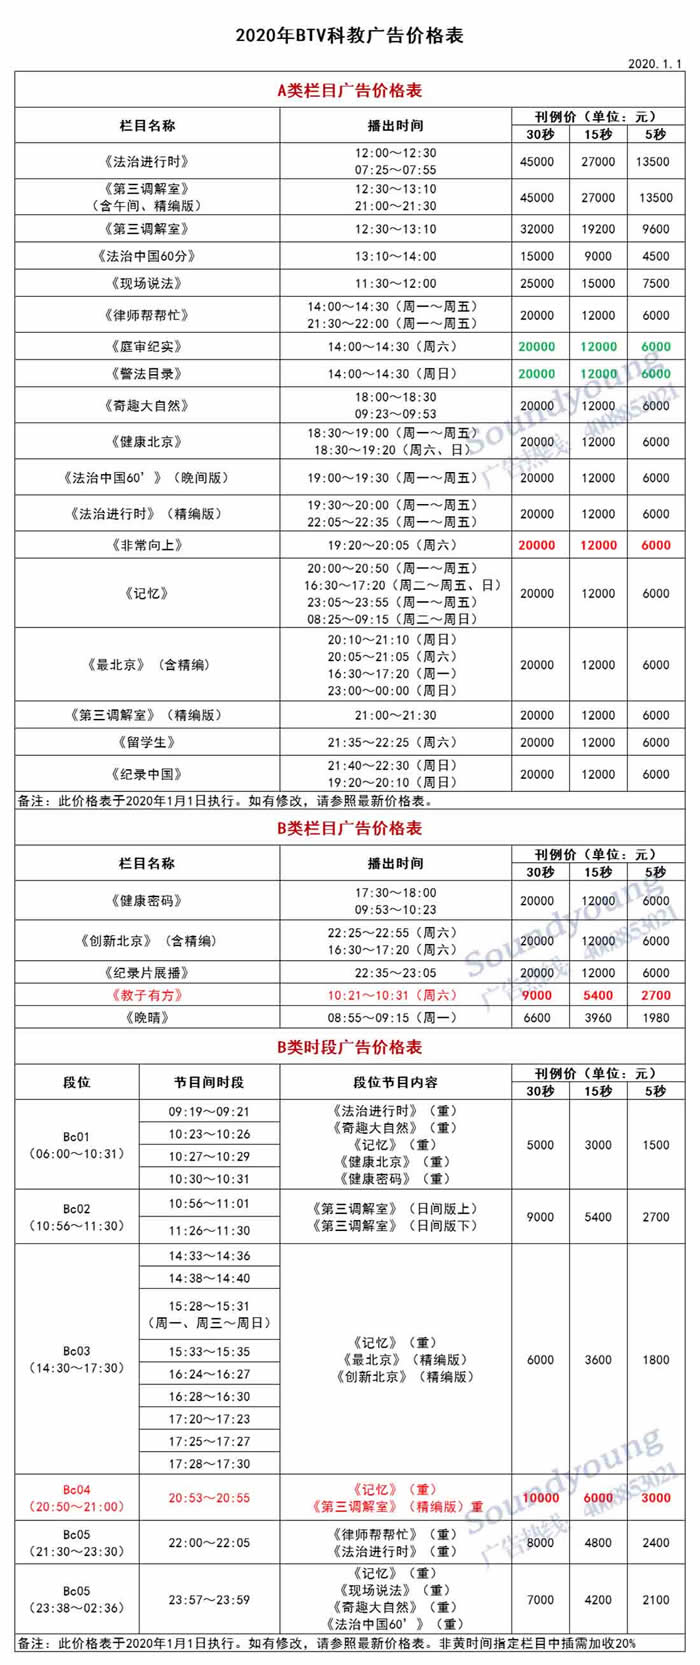 北京电视台（BTV-3）科教频道2020年广告价格